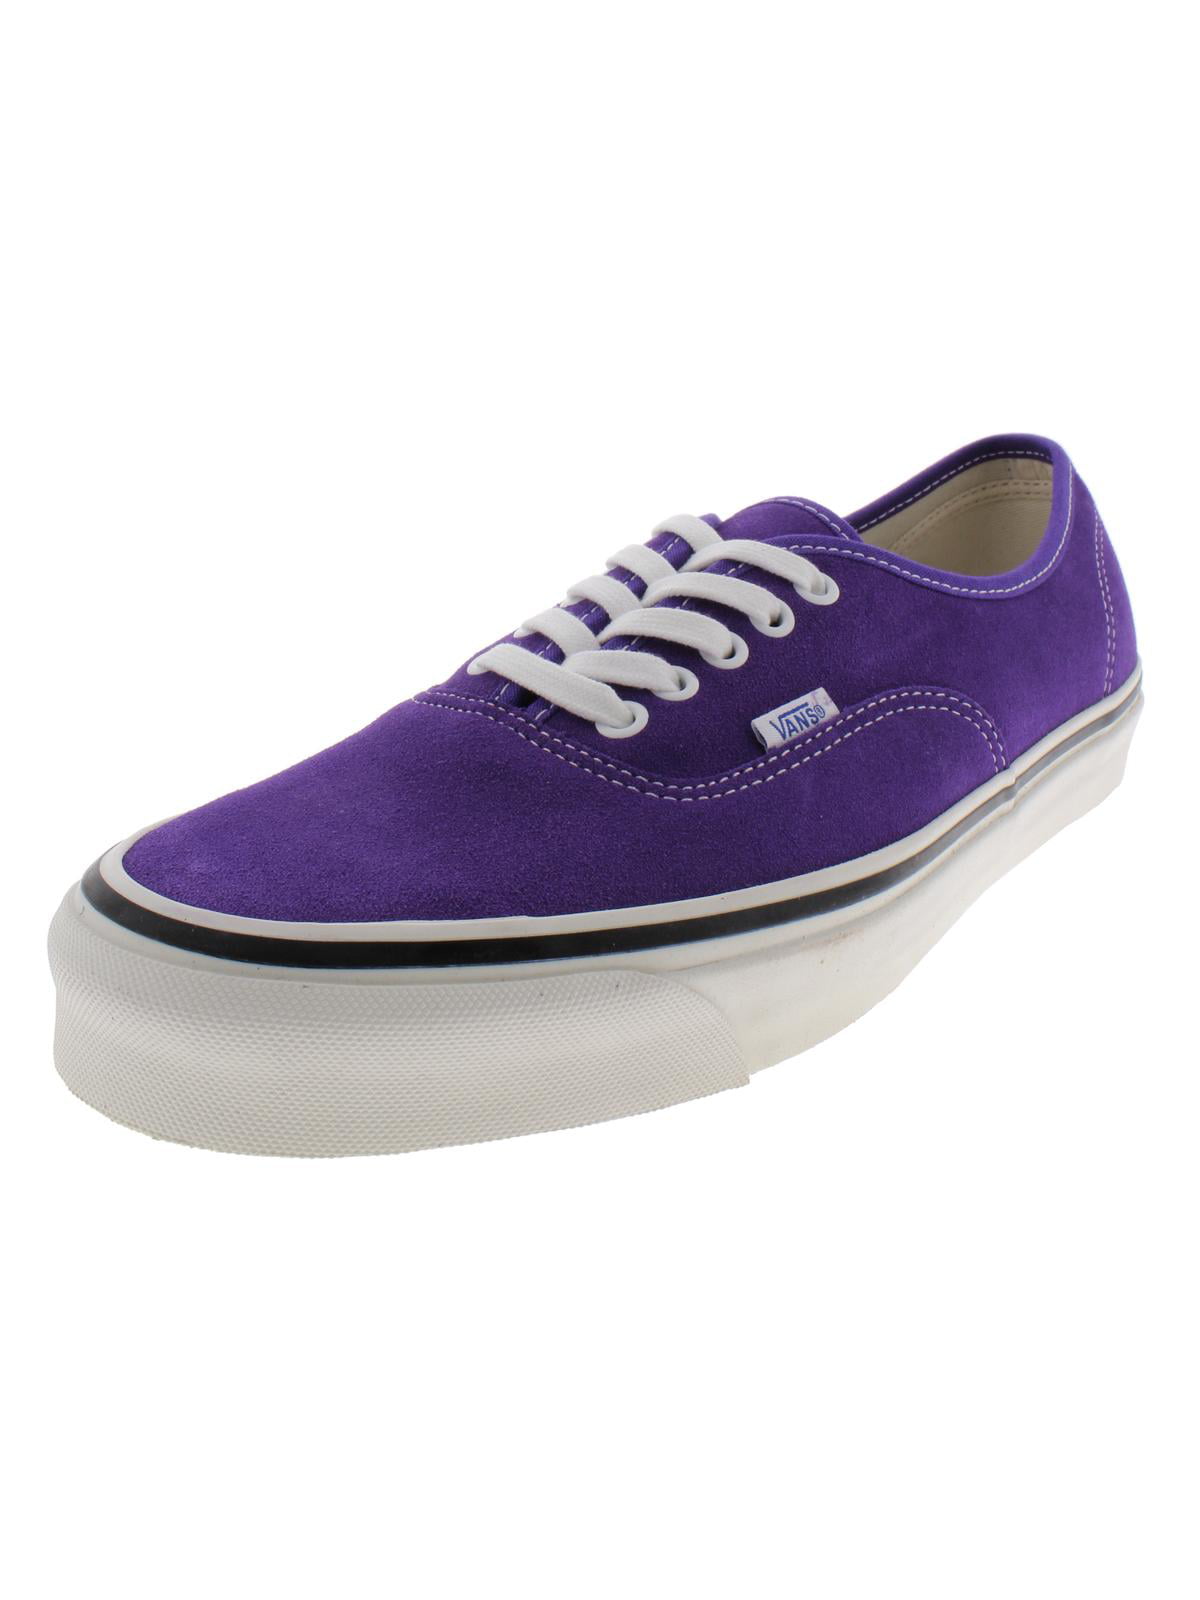 mens purple vans shoes